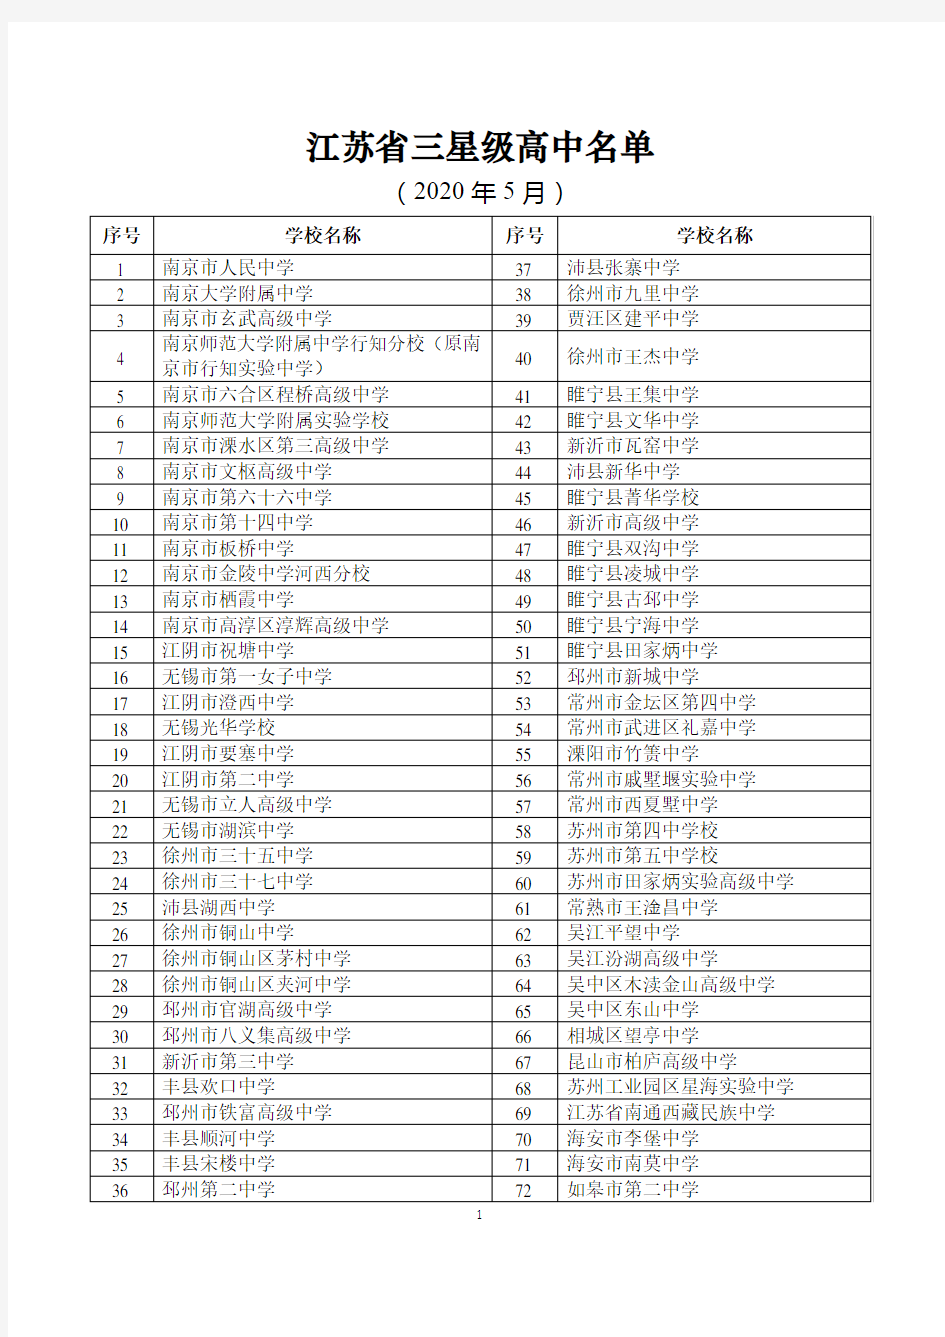 江苏省三星级高中名单(2020年最新)